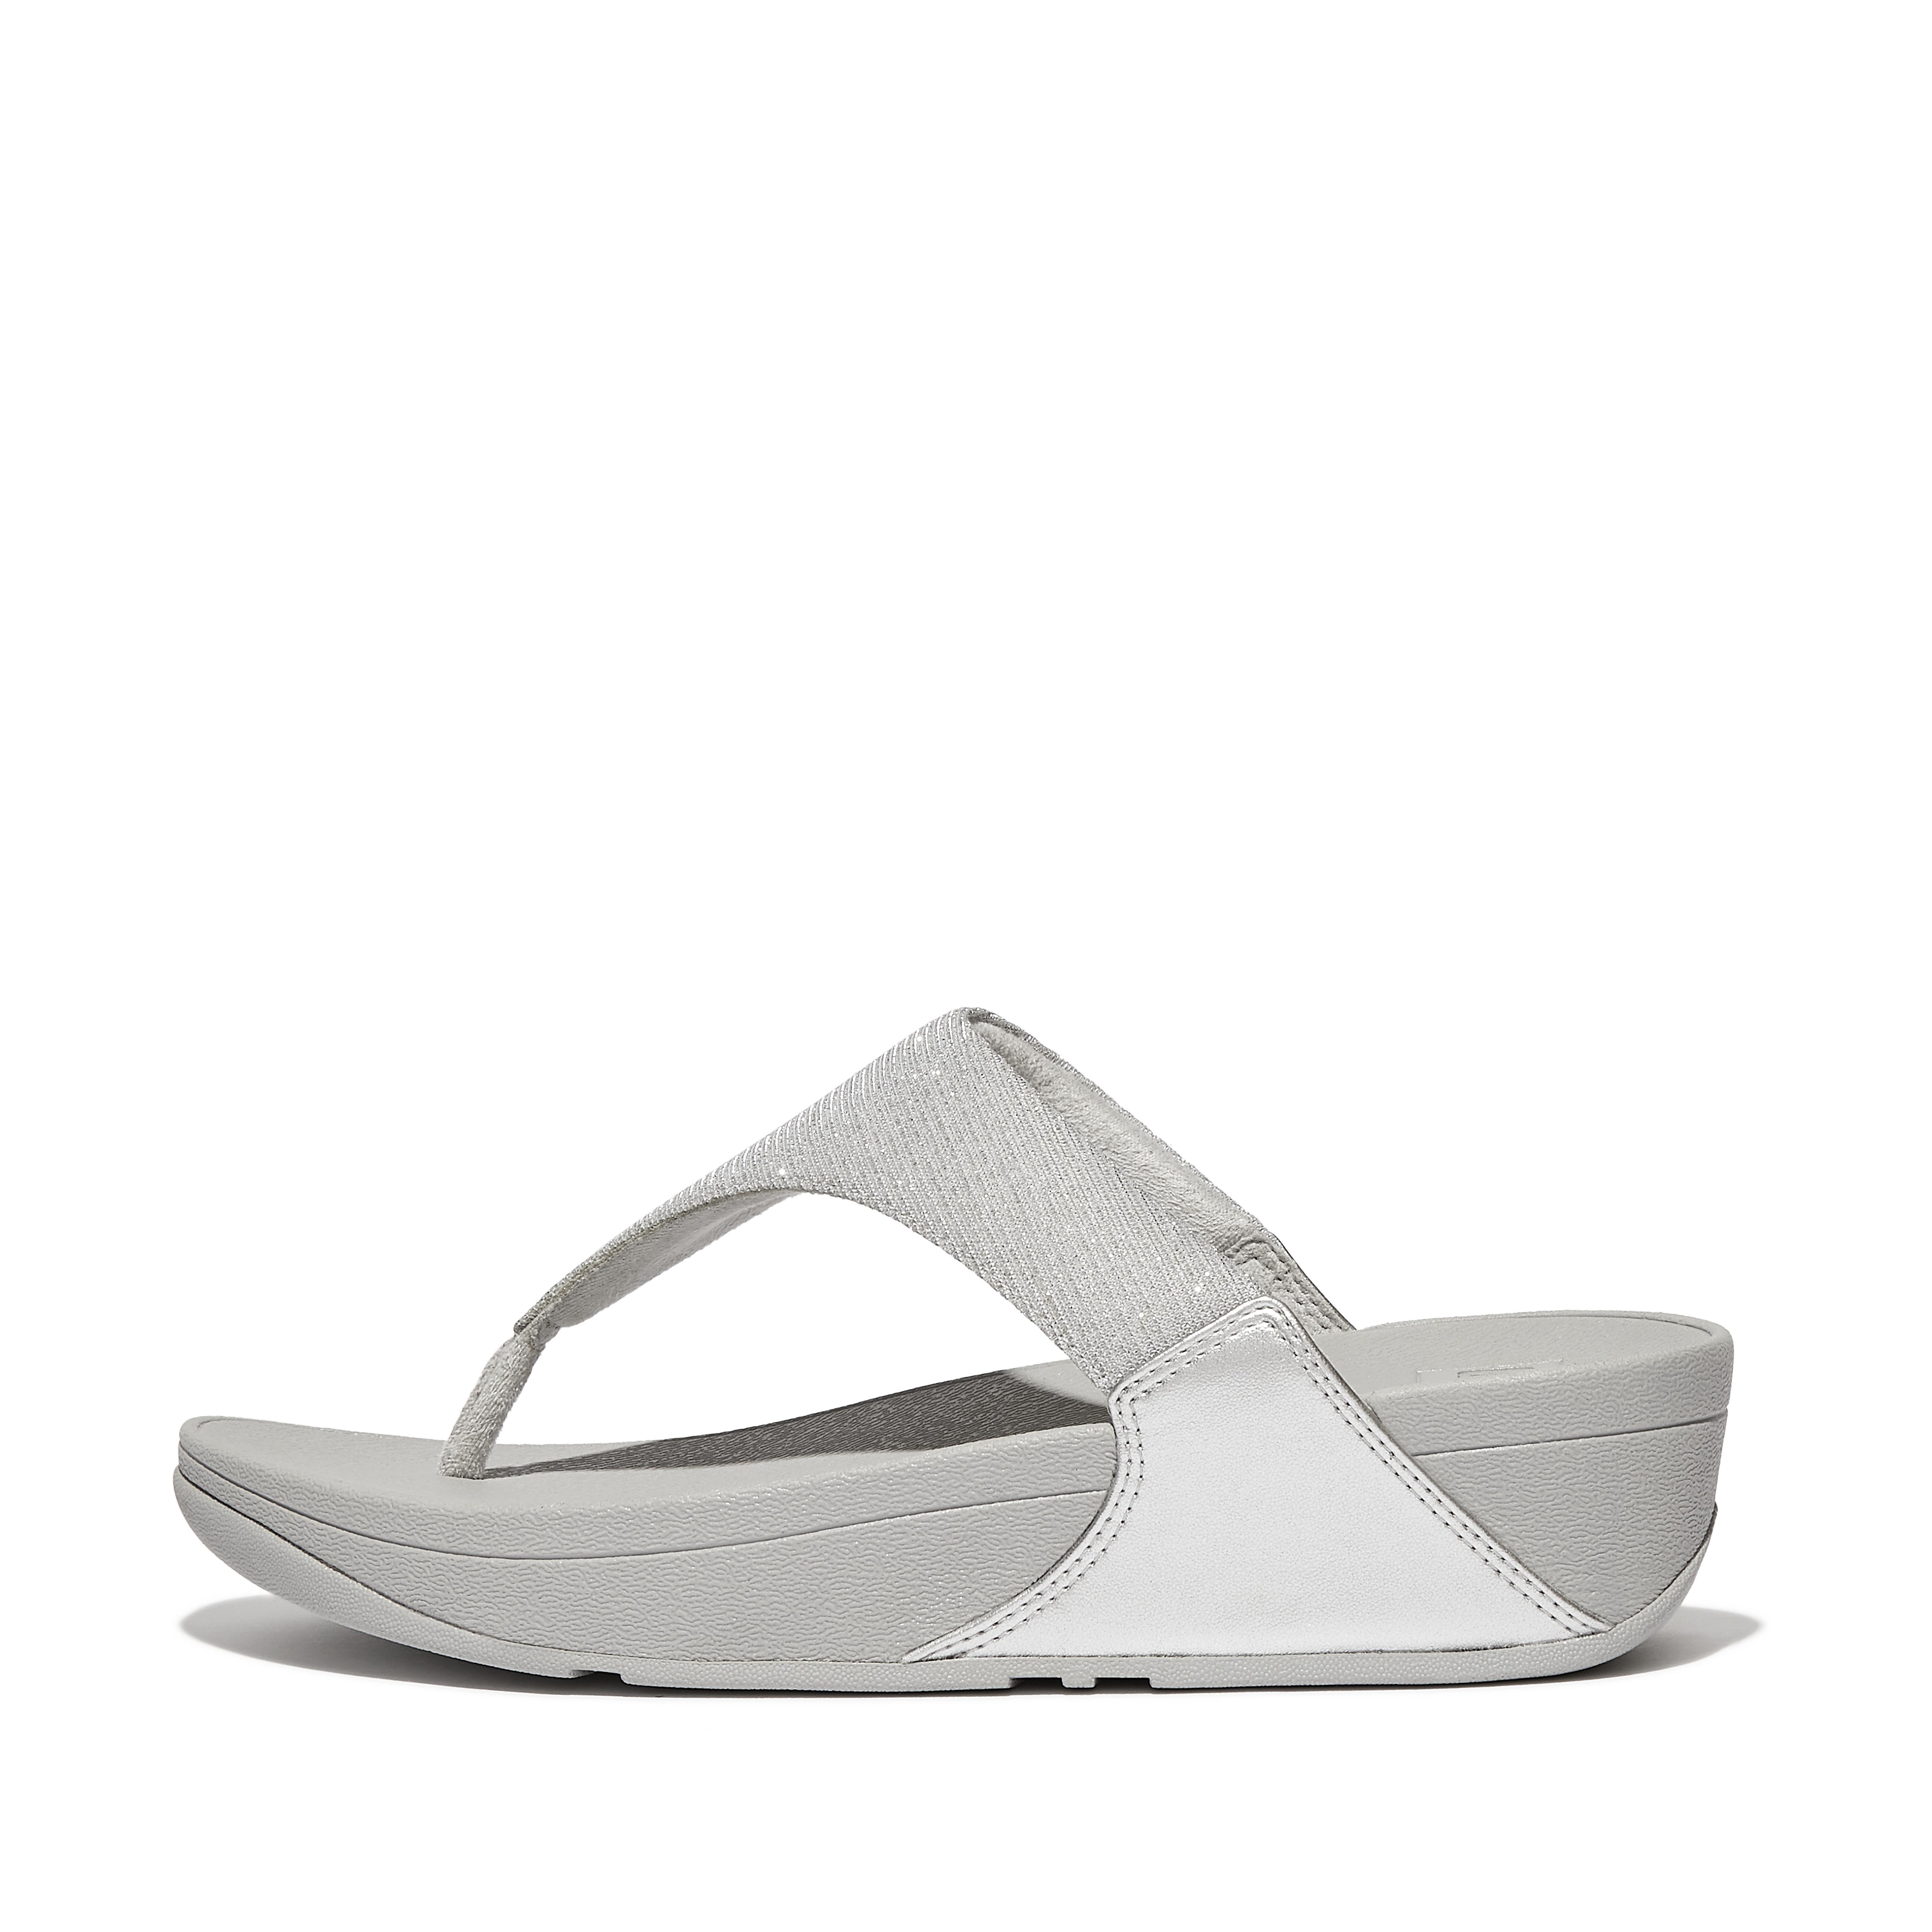 핏플랍 Fitflop Shimmerlux Toe-Post Sandals,Silver